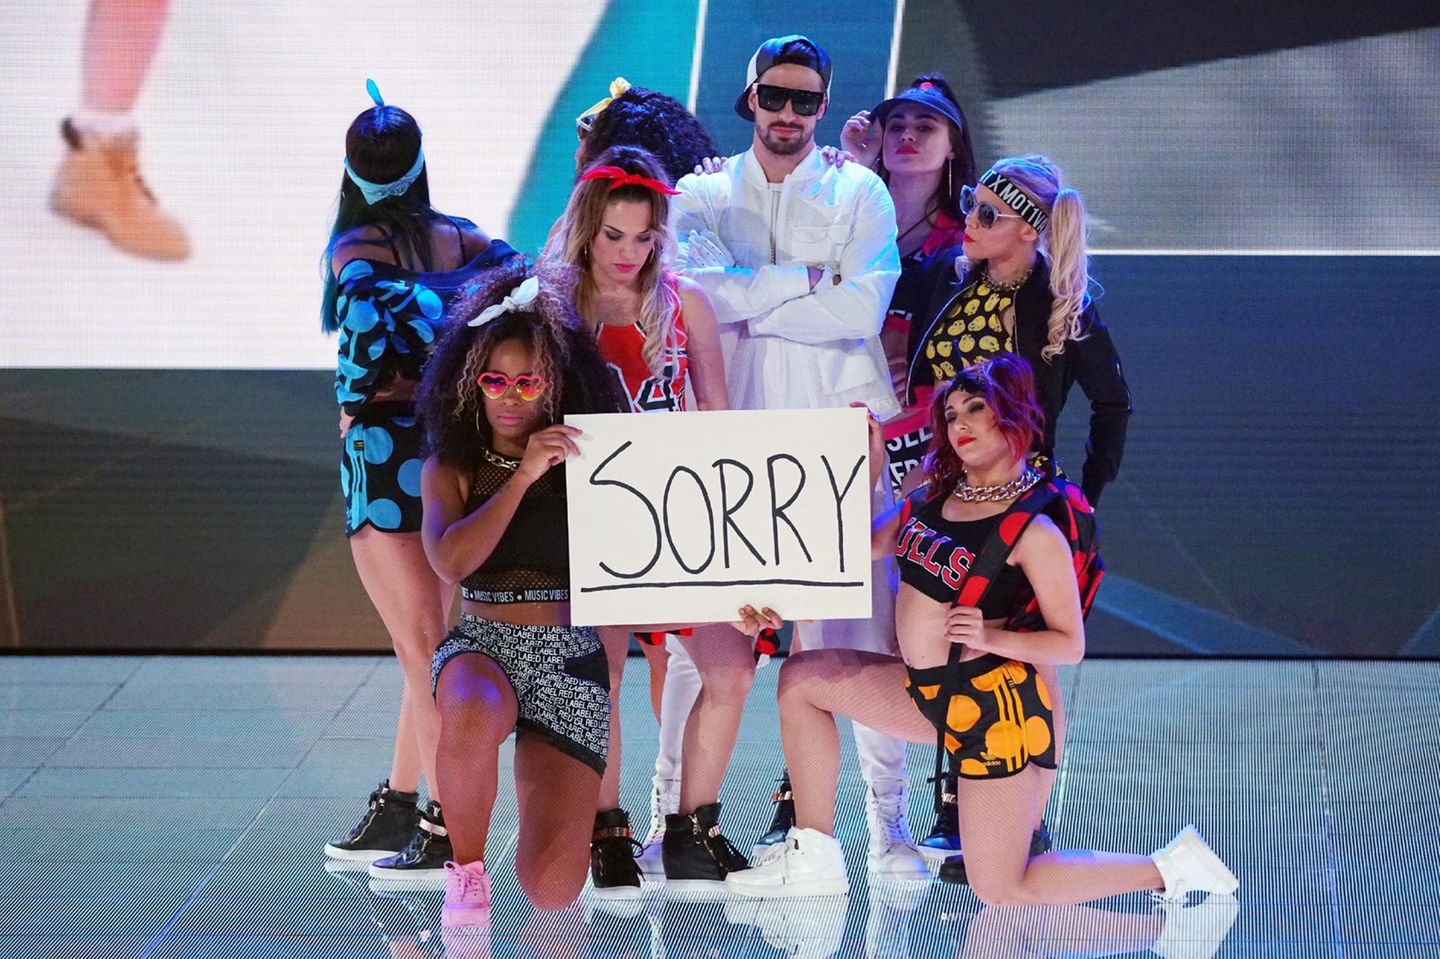 Bene tanzt bei seinem Solo zu "Sorry" von Justin Bieber.